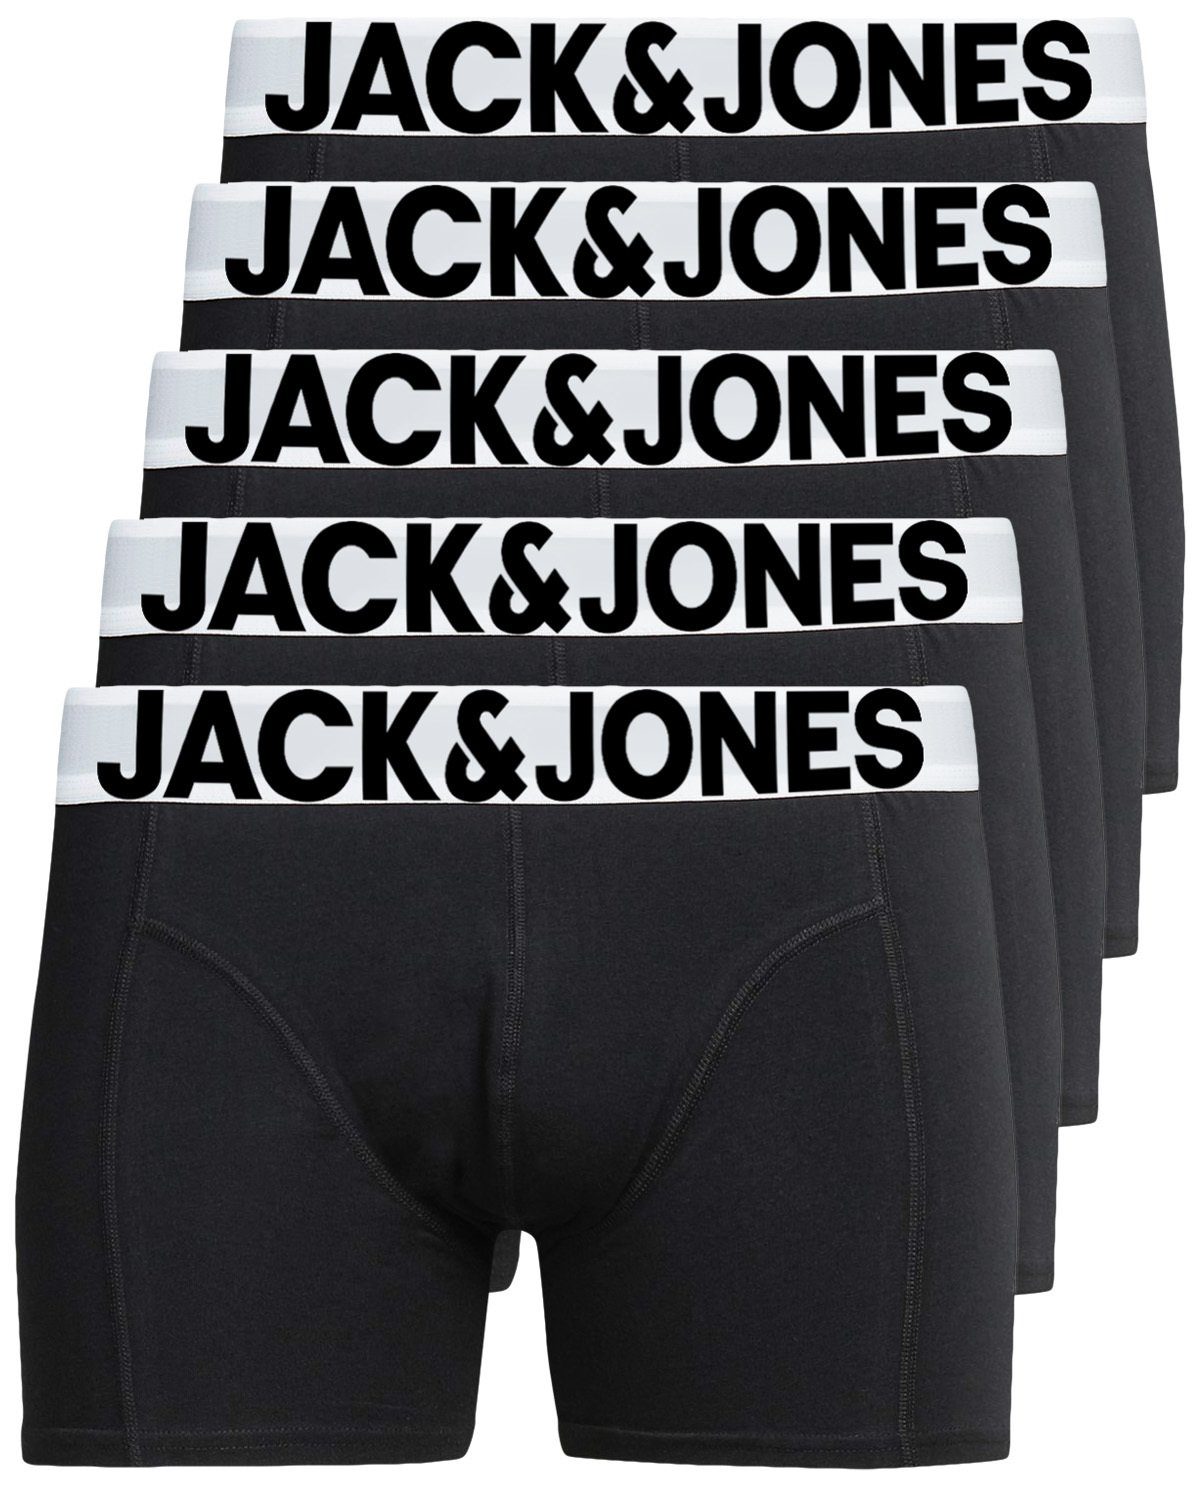 Jack & Jones Boxershorts Solid (5-St., 5er Pack) gute Passform durch elastische Baumwollqualität schwarz | Boxer anliegend